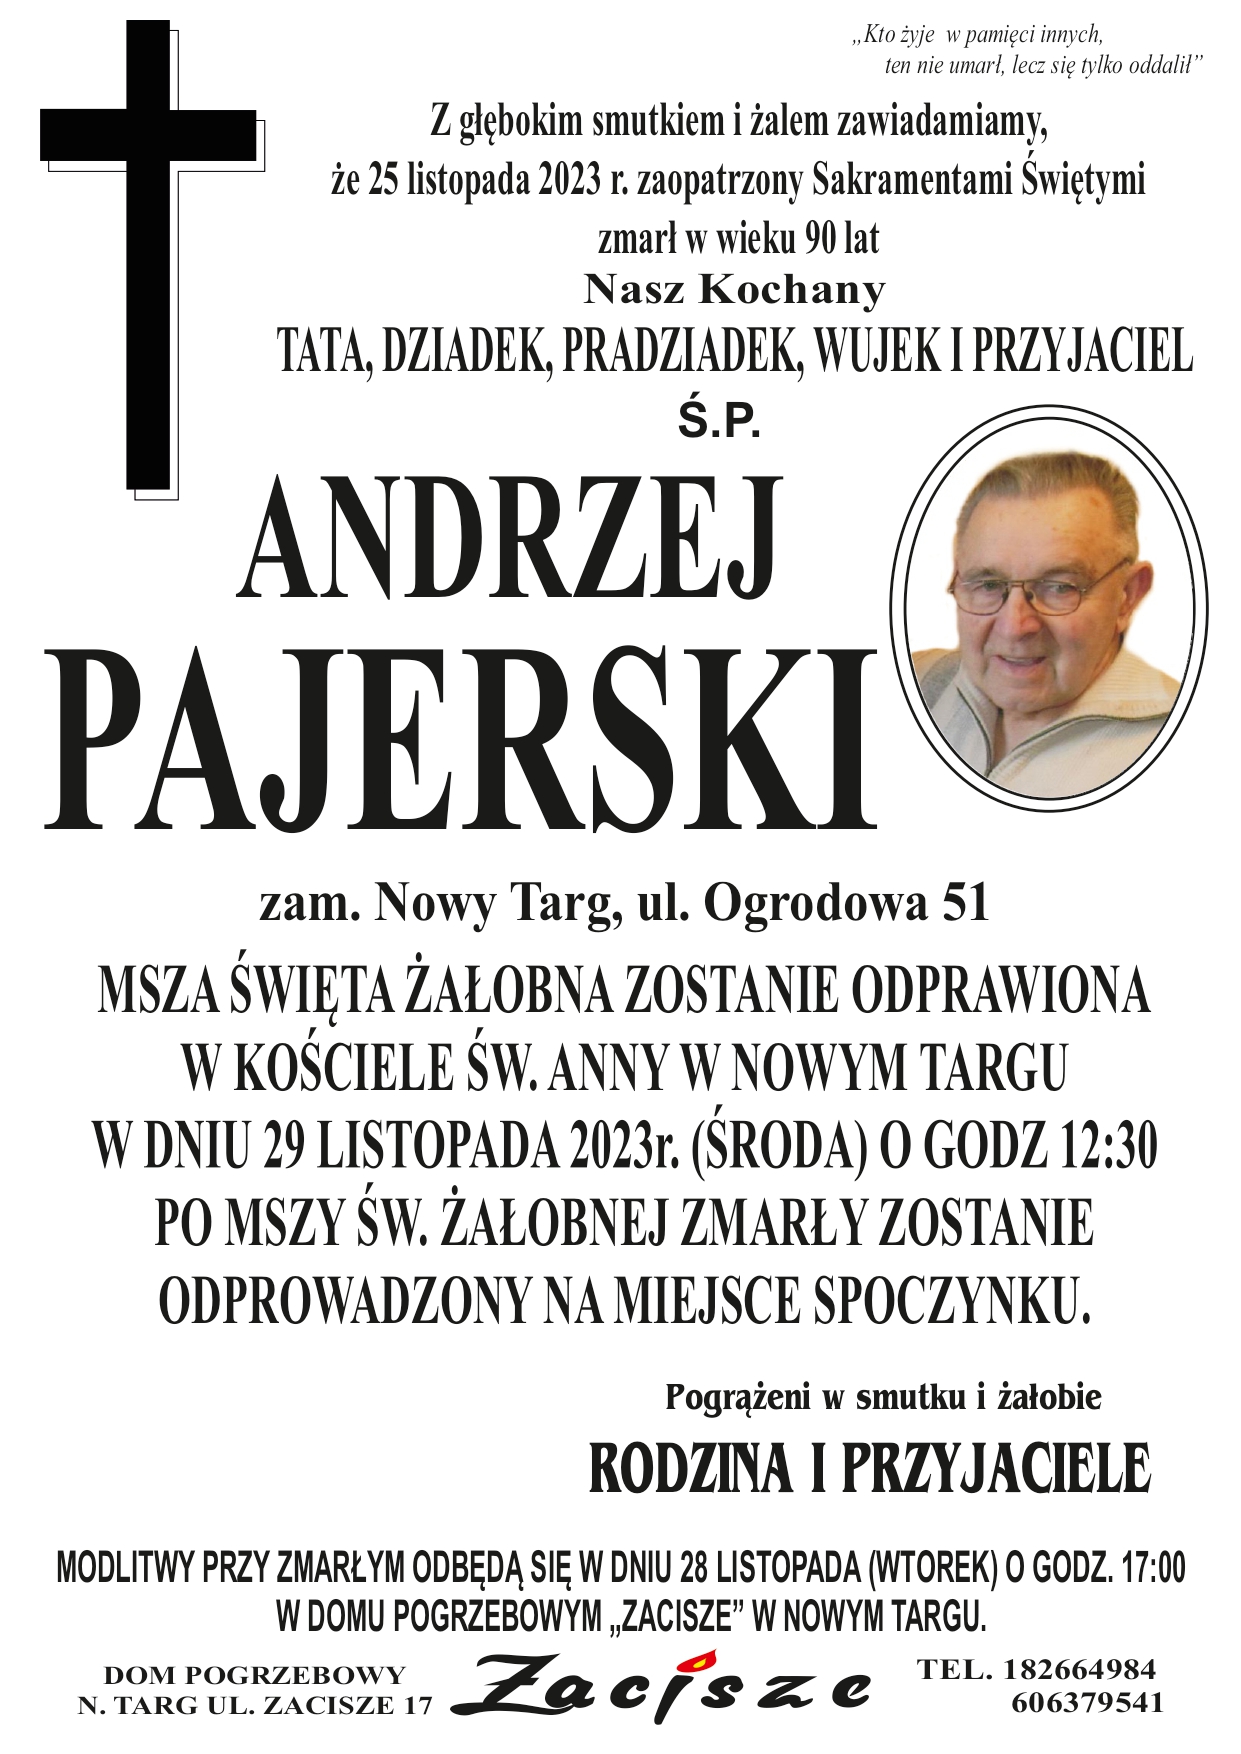 Andrzej Pajerski